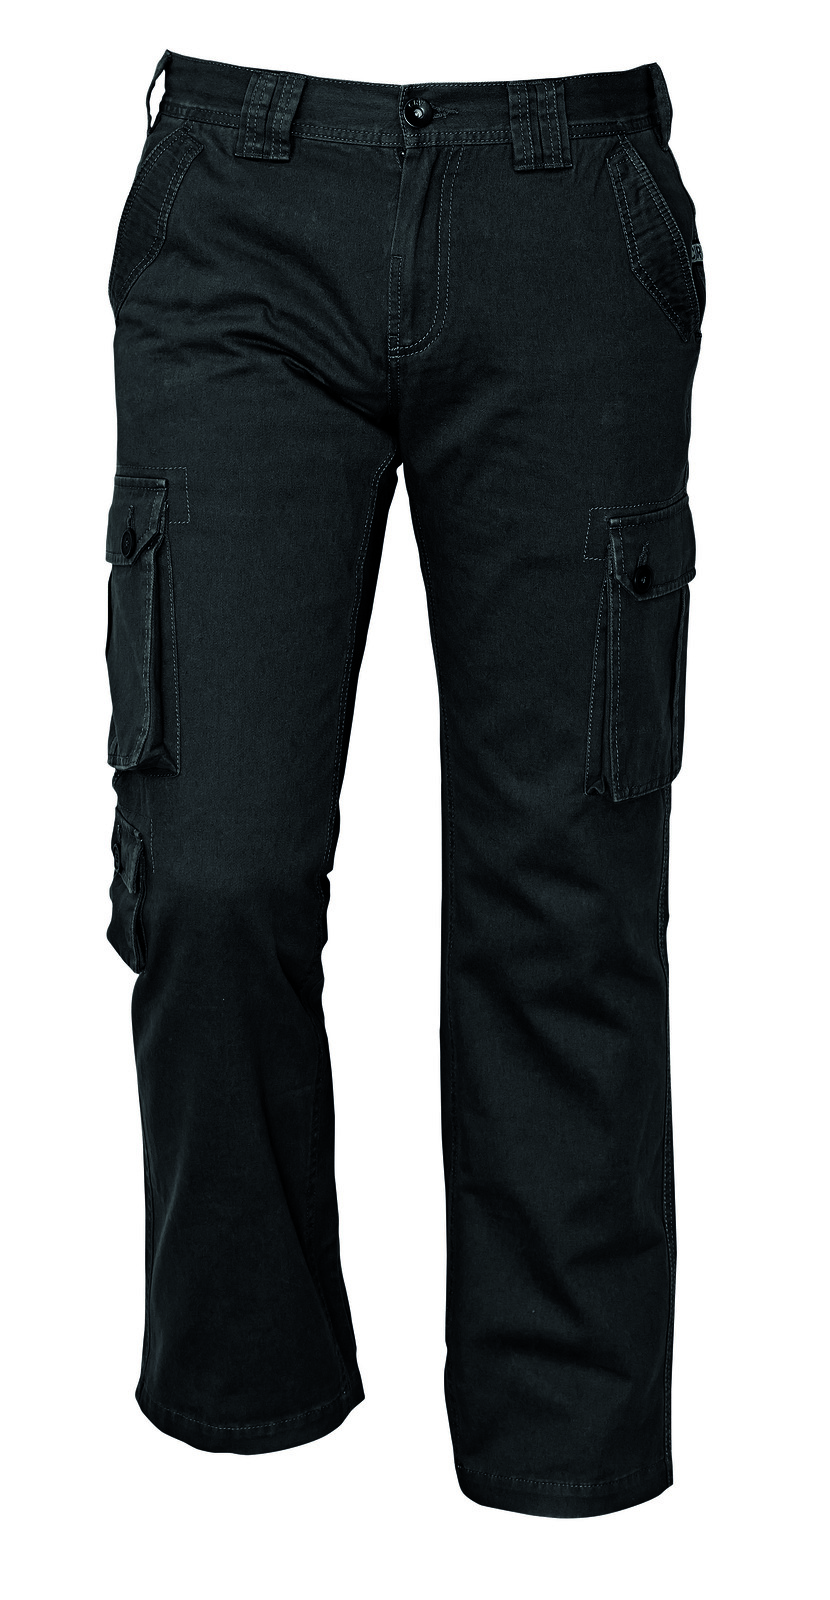 Pánske nohavice Chena kapsáče - veľkosť: M, farba: čierna